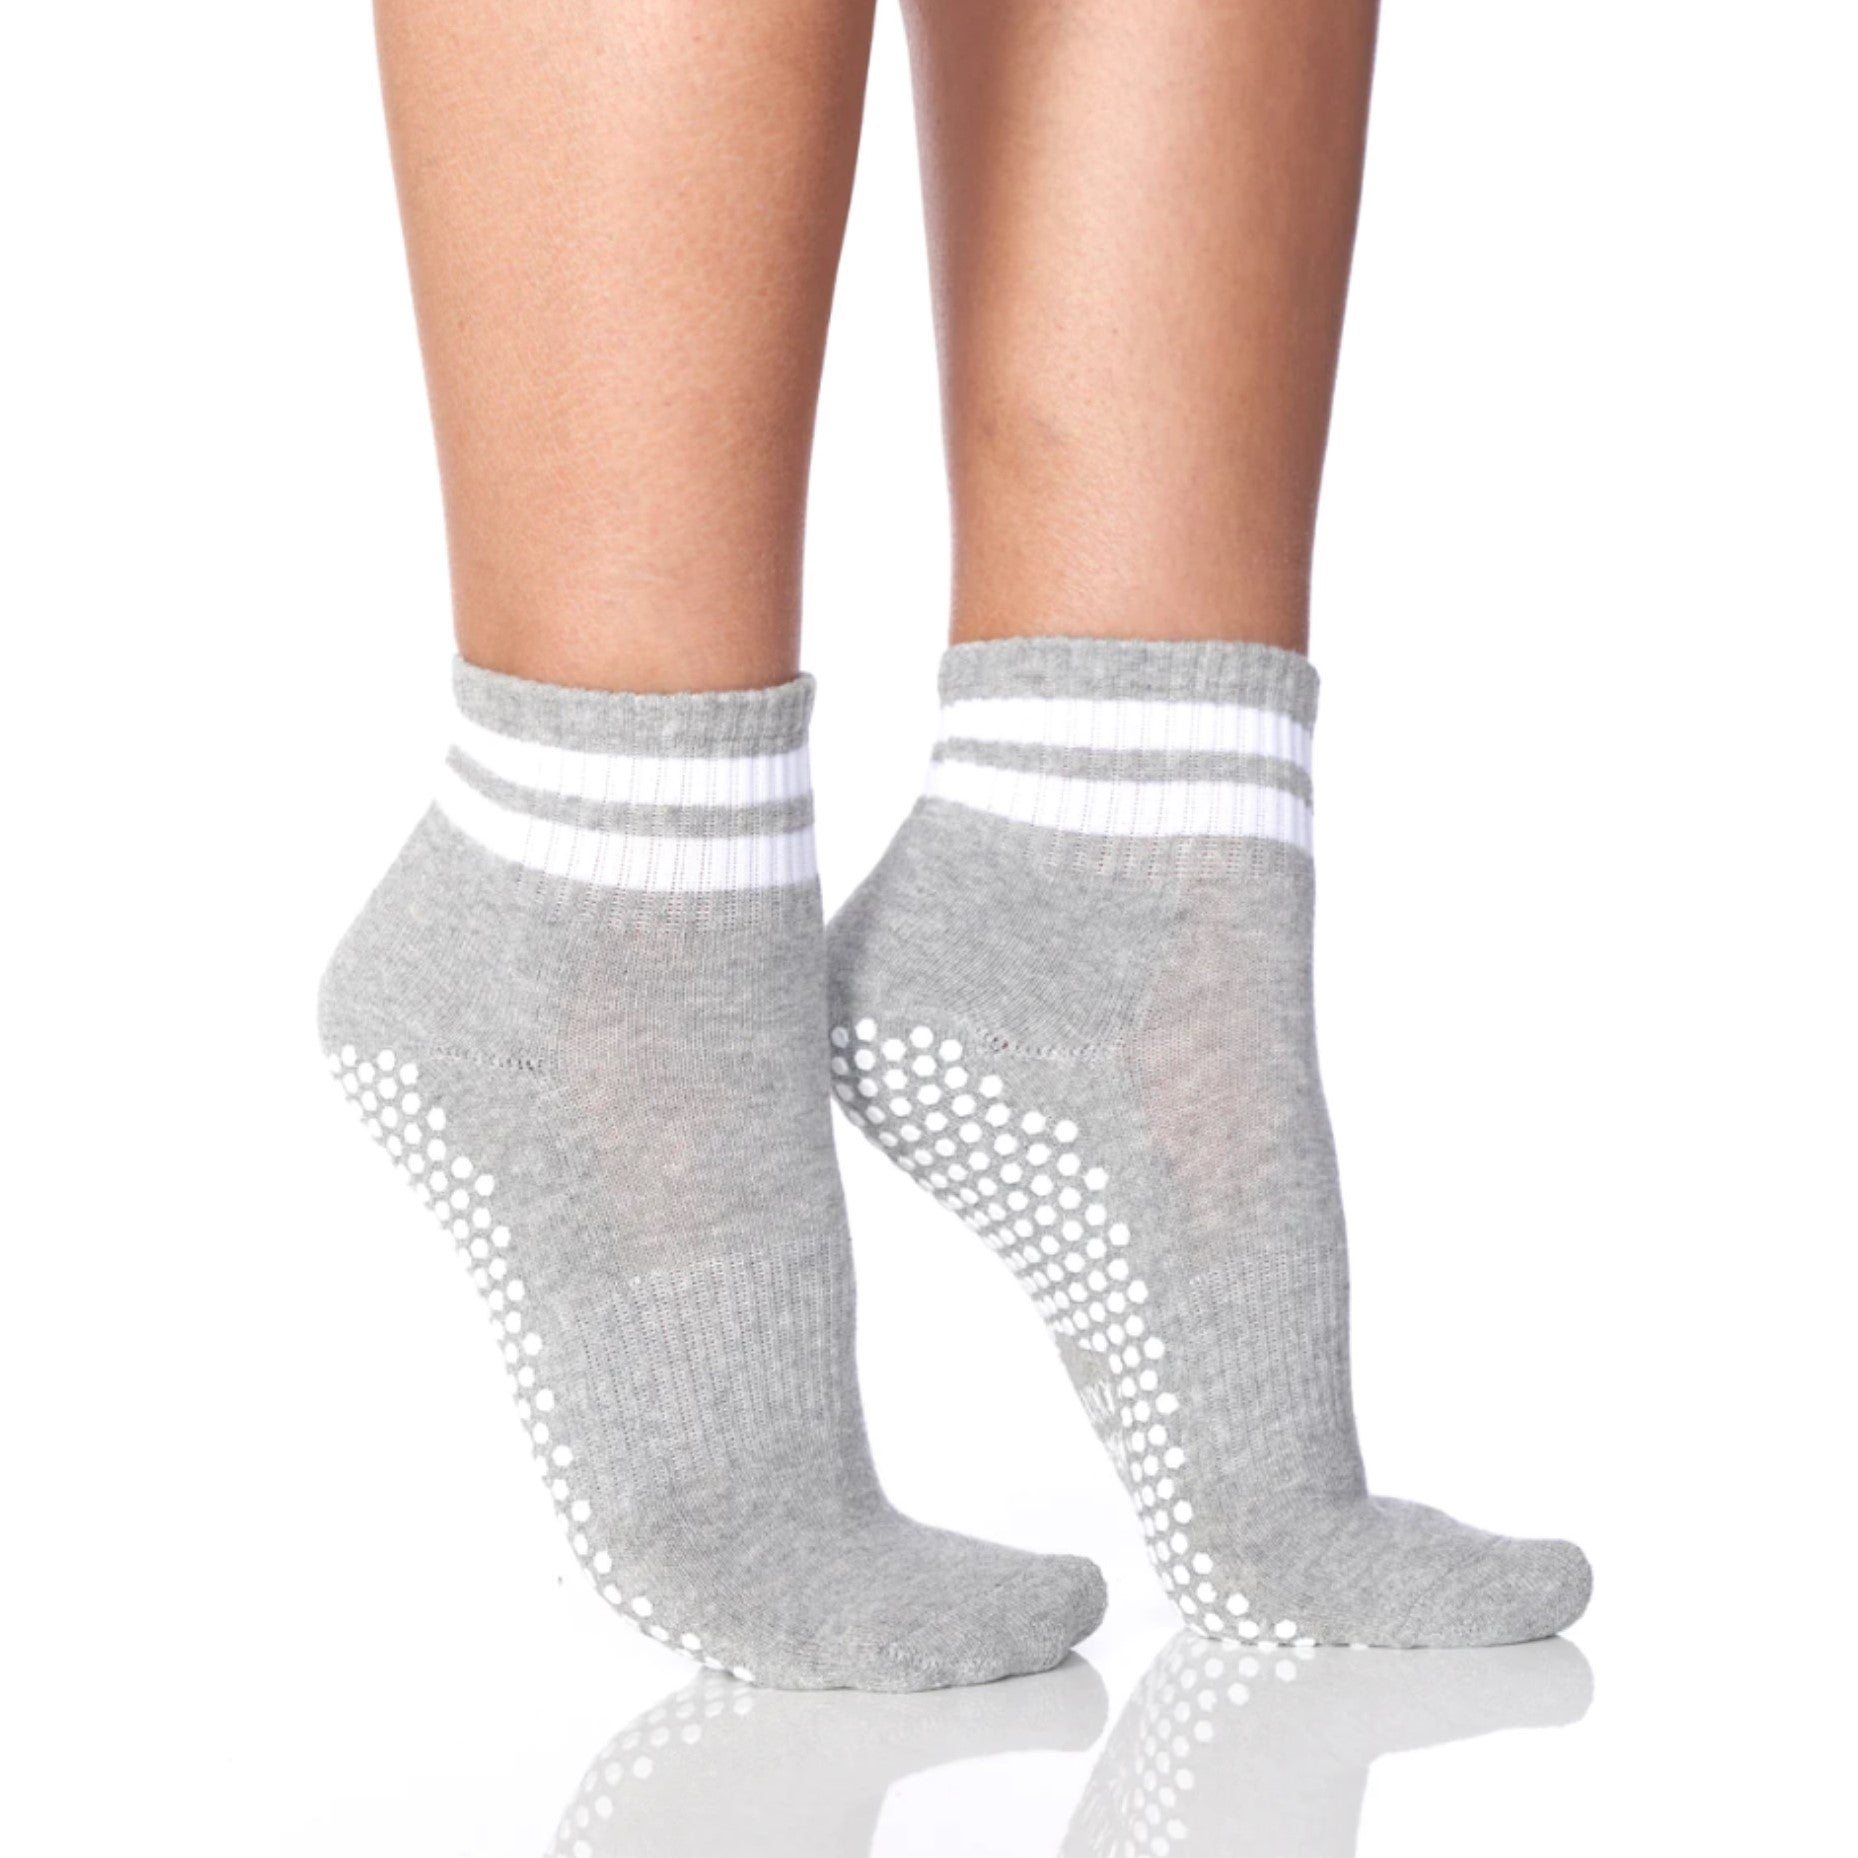 Solidcord is my true love 💙 wearing @Lucky Honey grip socks (swear by, Grippy Sock